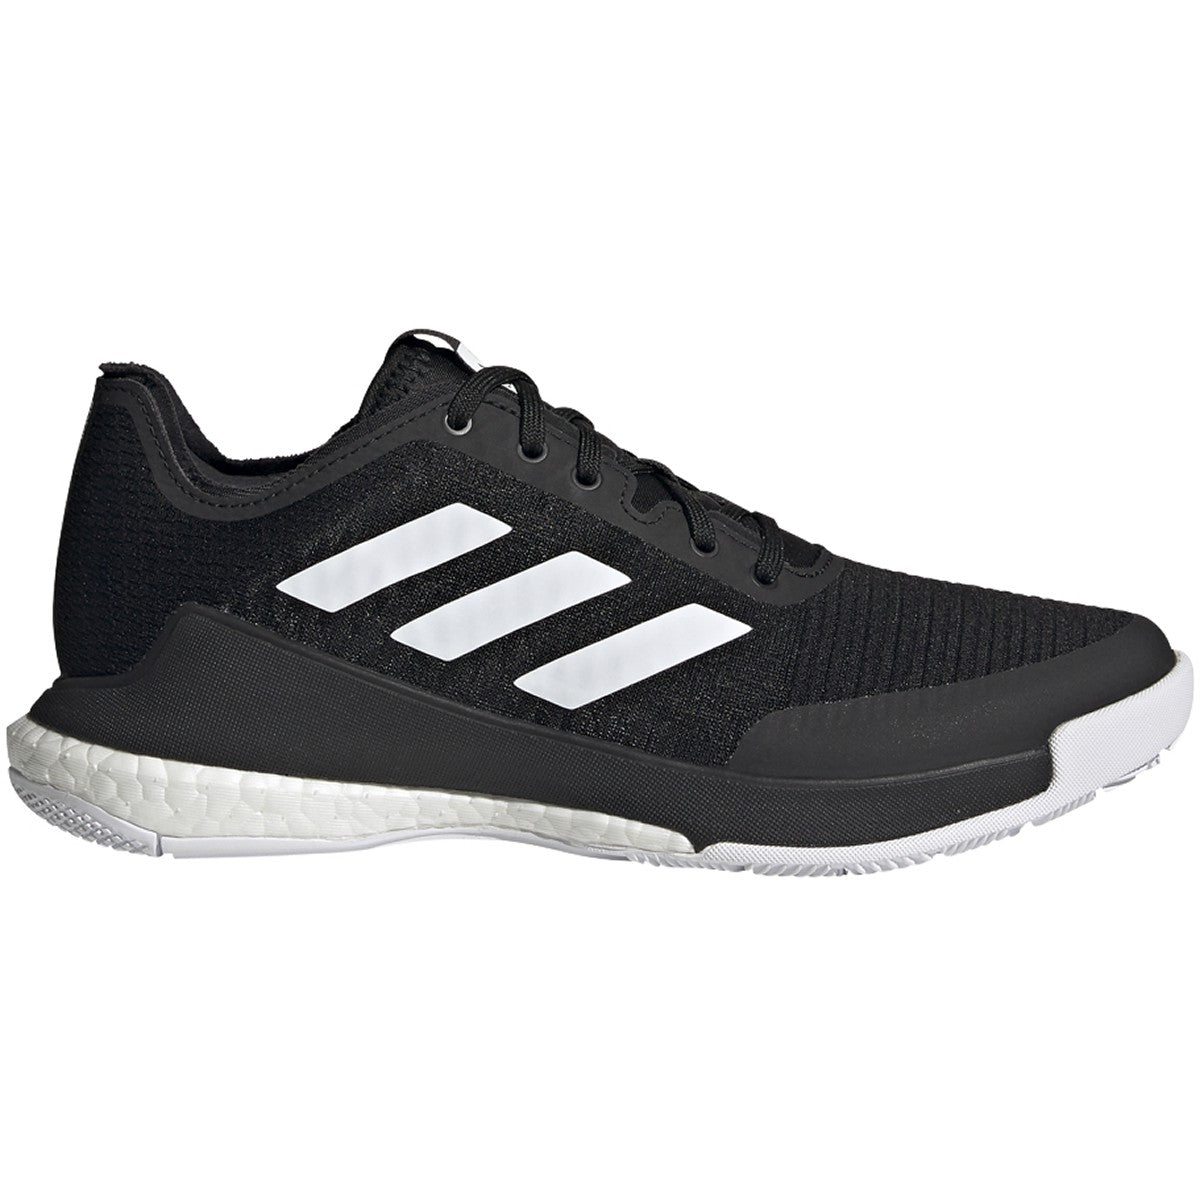 Adidas CrazyFlight W Black/White – Kratz Sporting